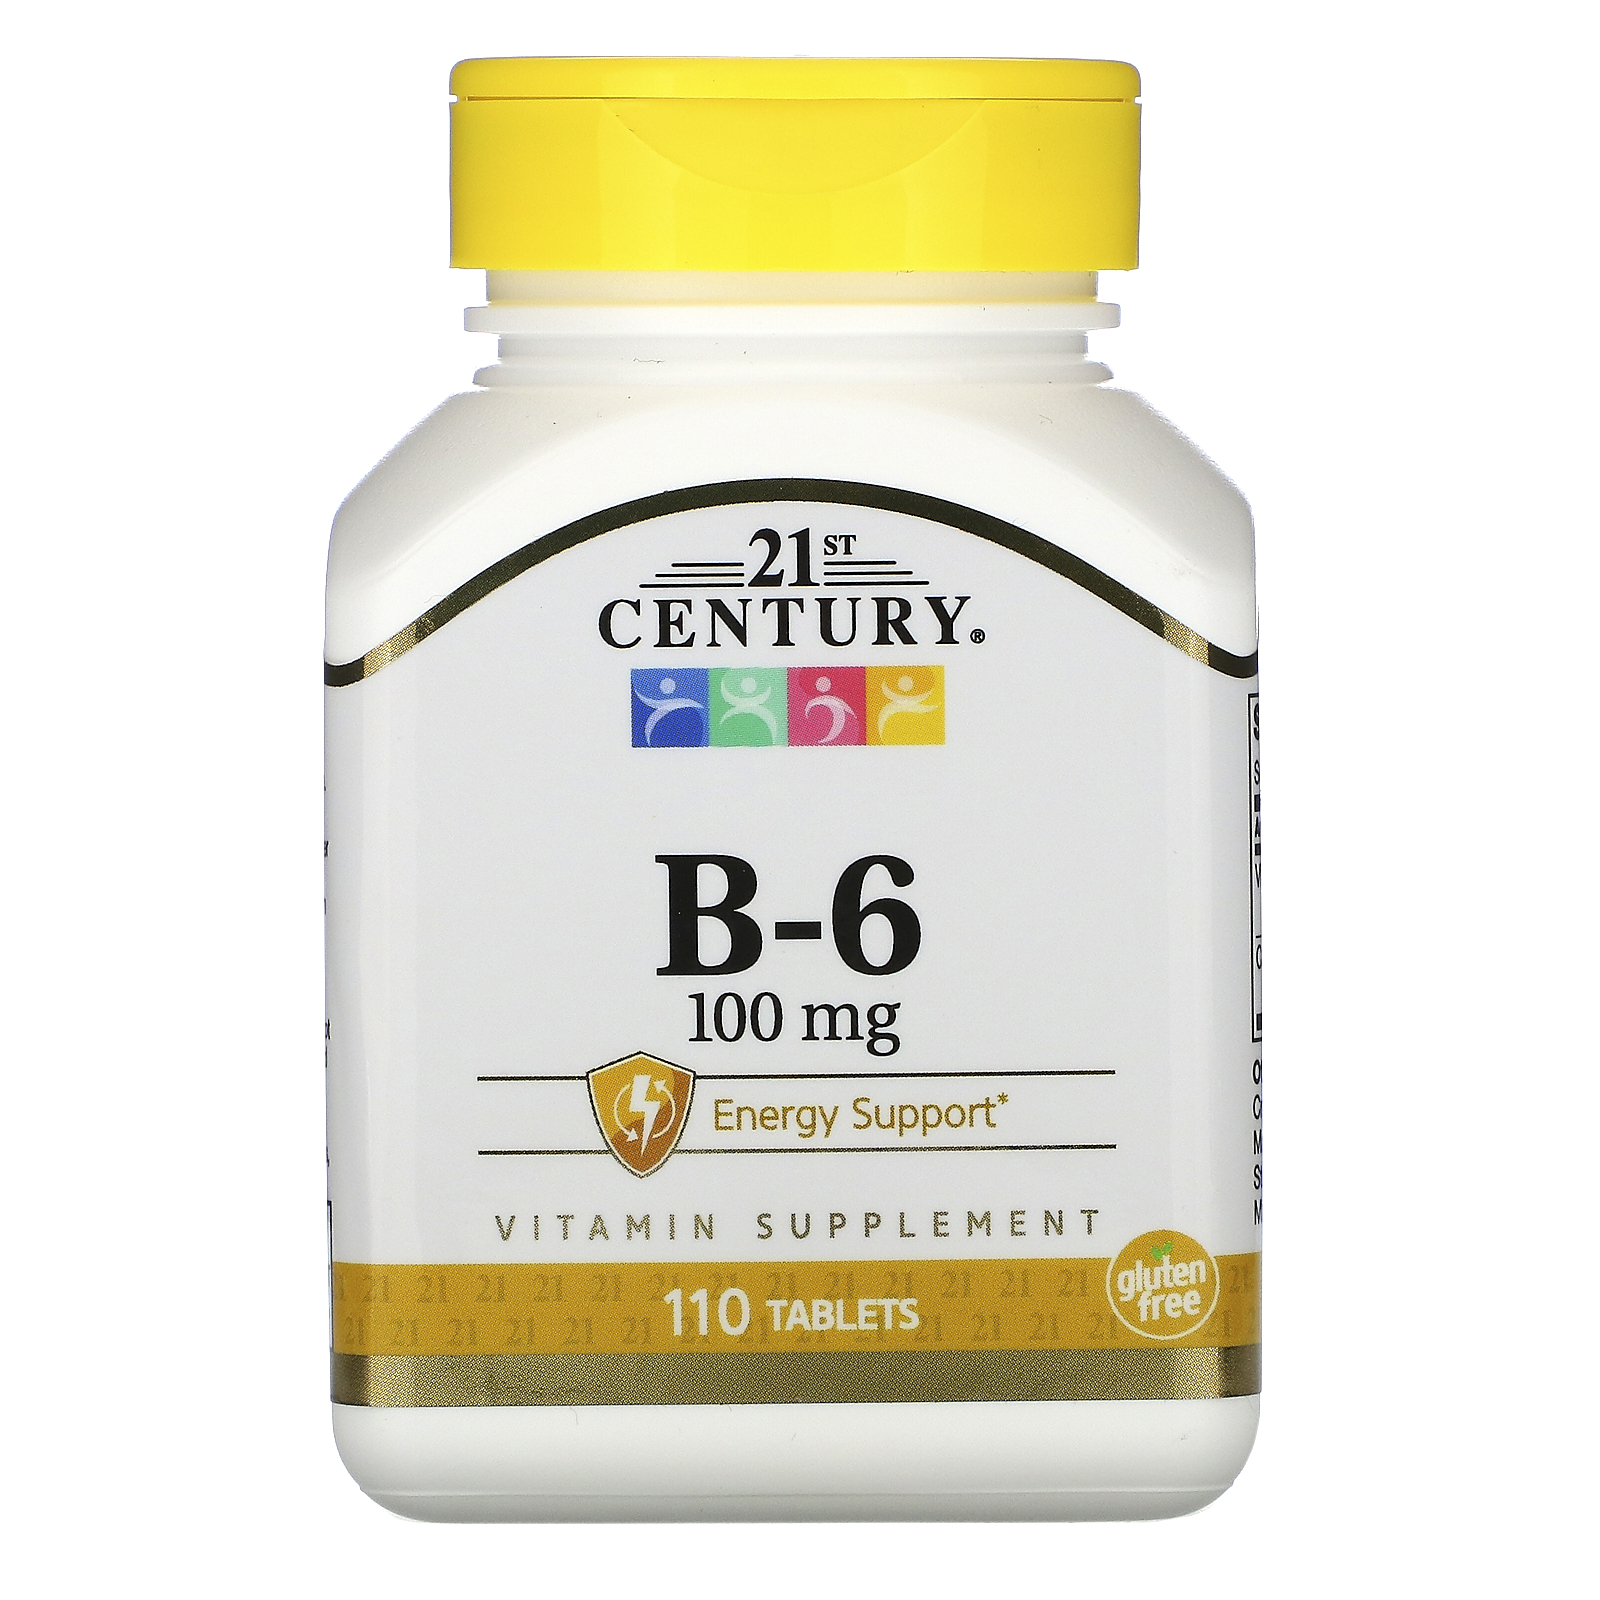 Купить 21st Century - B-6 100 мг (110 таблеток) - пиридоксин гидрохлорид, витамин в6 в таблетках